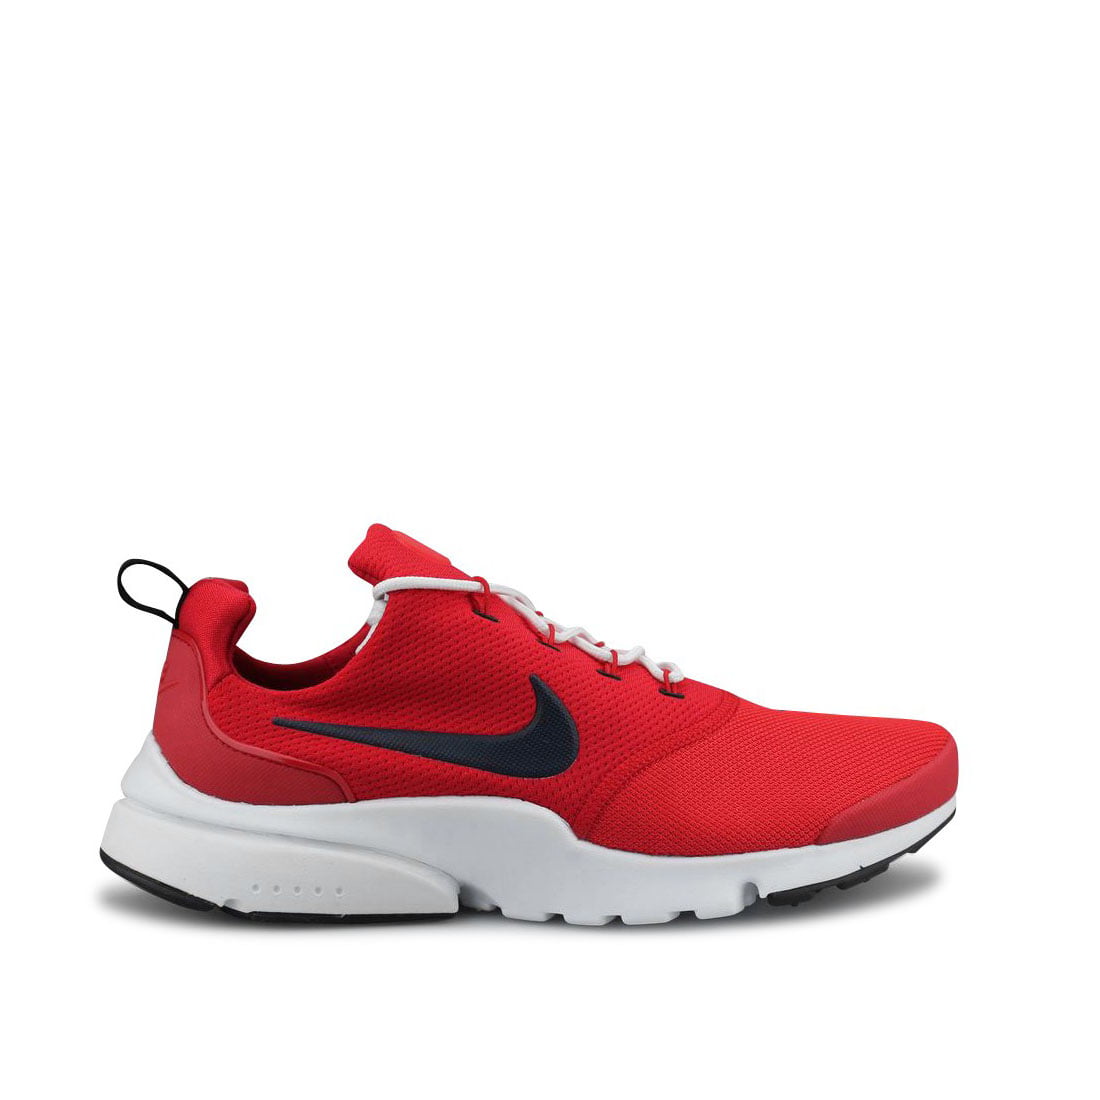 Enriquecimiento Paisaje educación Nike Presto Fly Low-Top Men/Adult shoe size 9 Casual 908019-605 Red -  Walmart.com